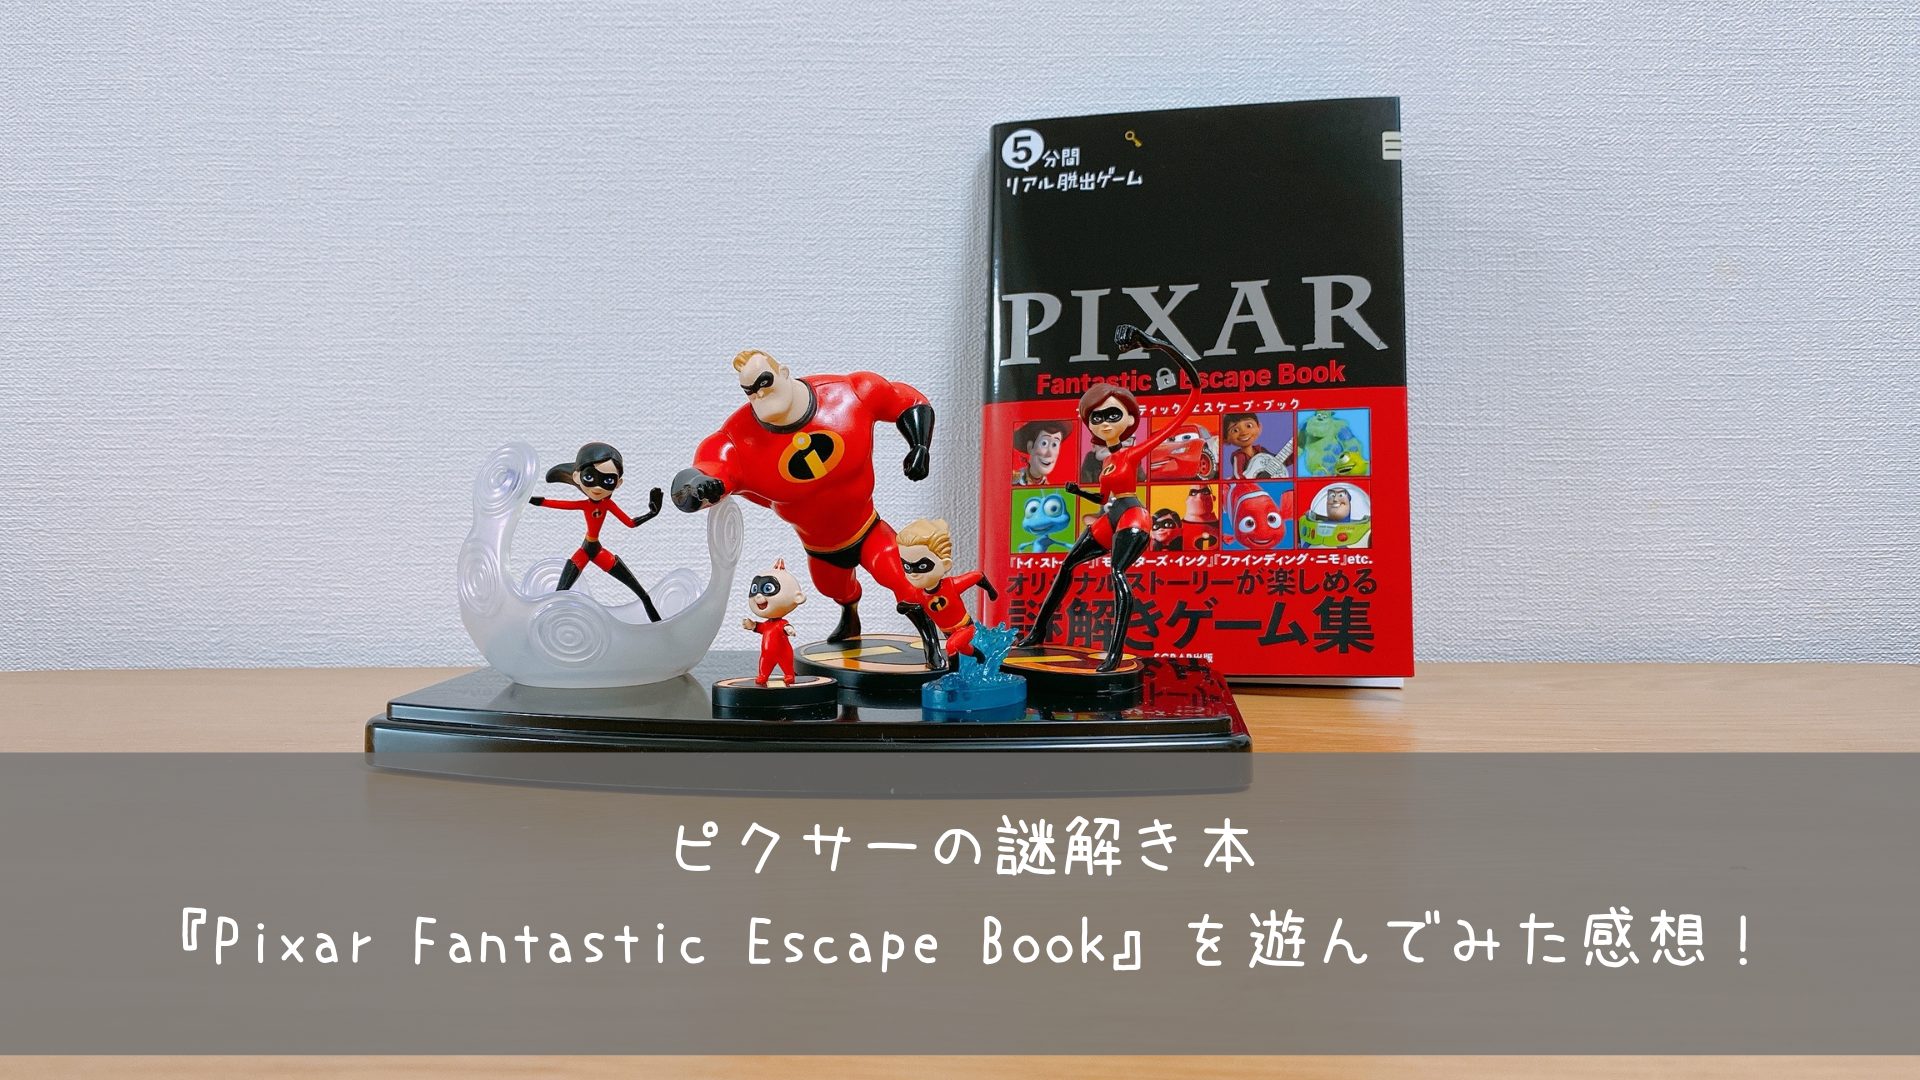 ピクサーの謎解き本 Pixar Fantastic Escape Book を遊んでみた感想 共働きくま夫婦のブログ